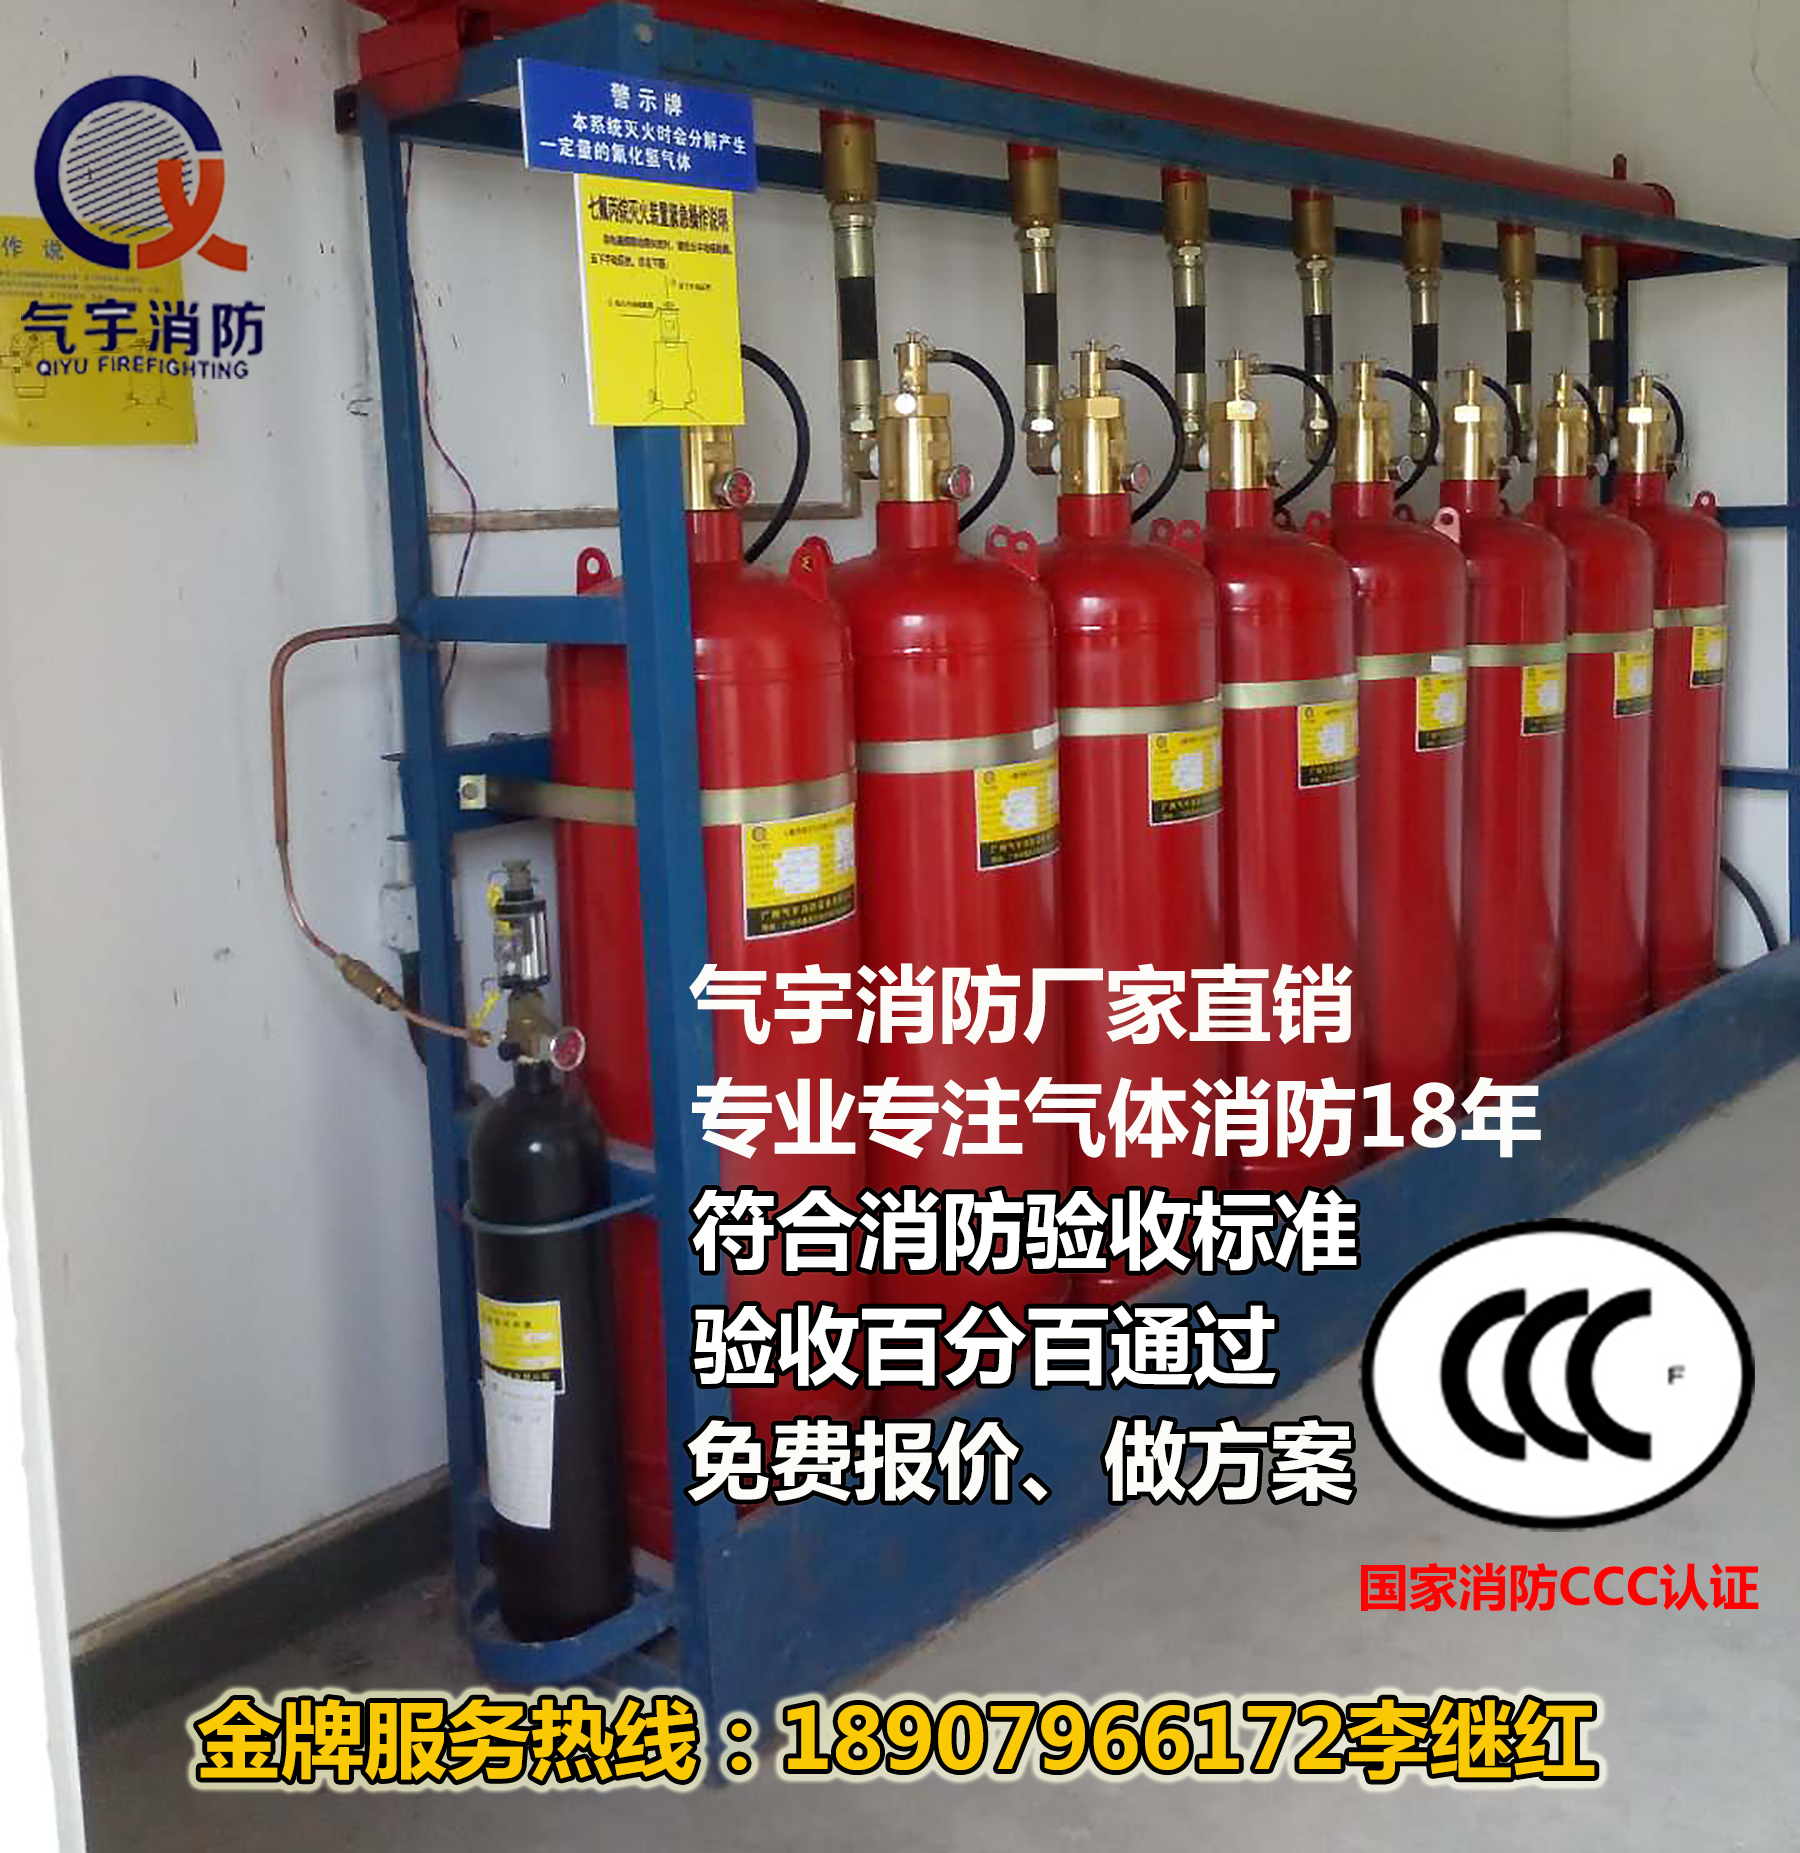 广州市七氟丙烷最新气体灭火自动装置厂家